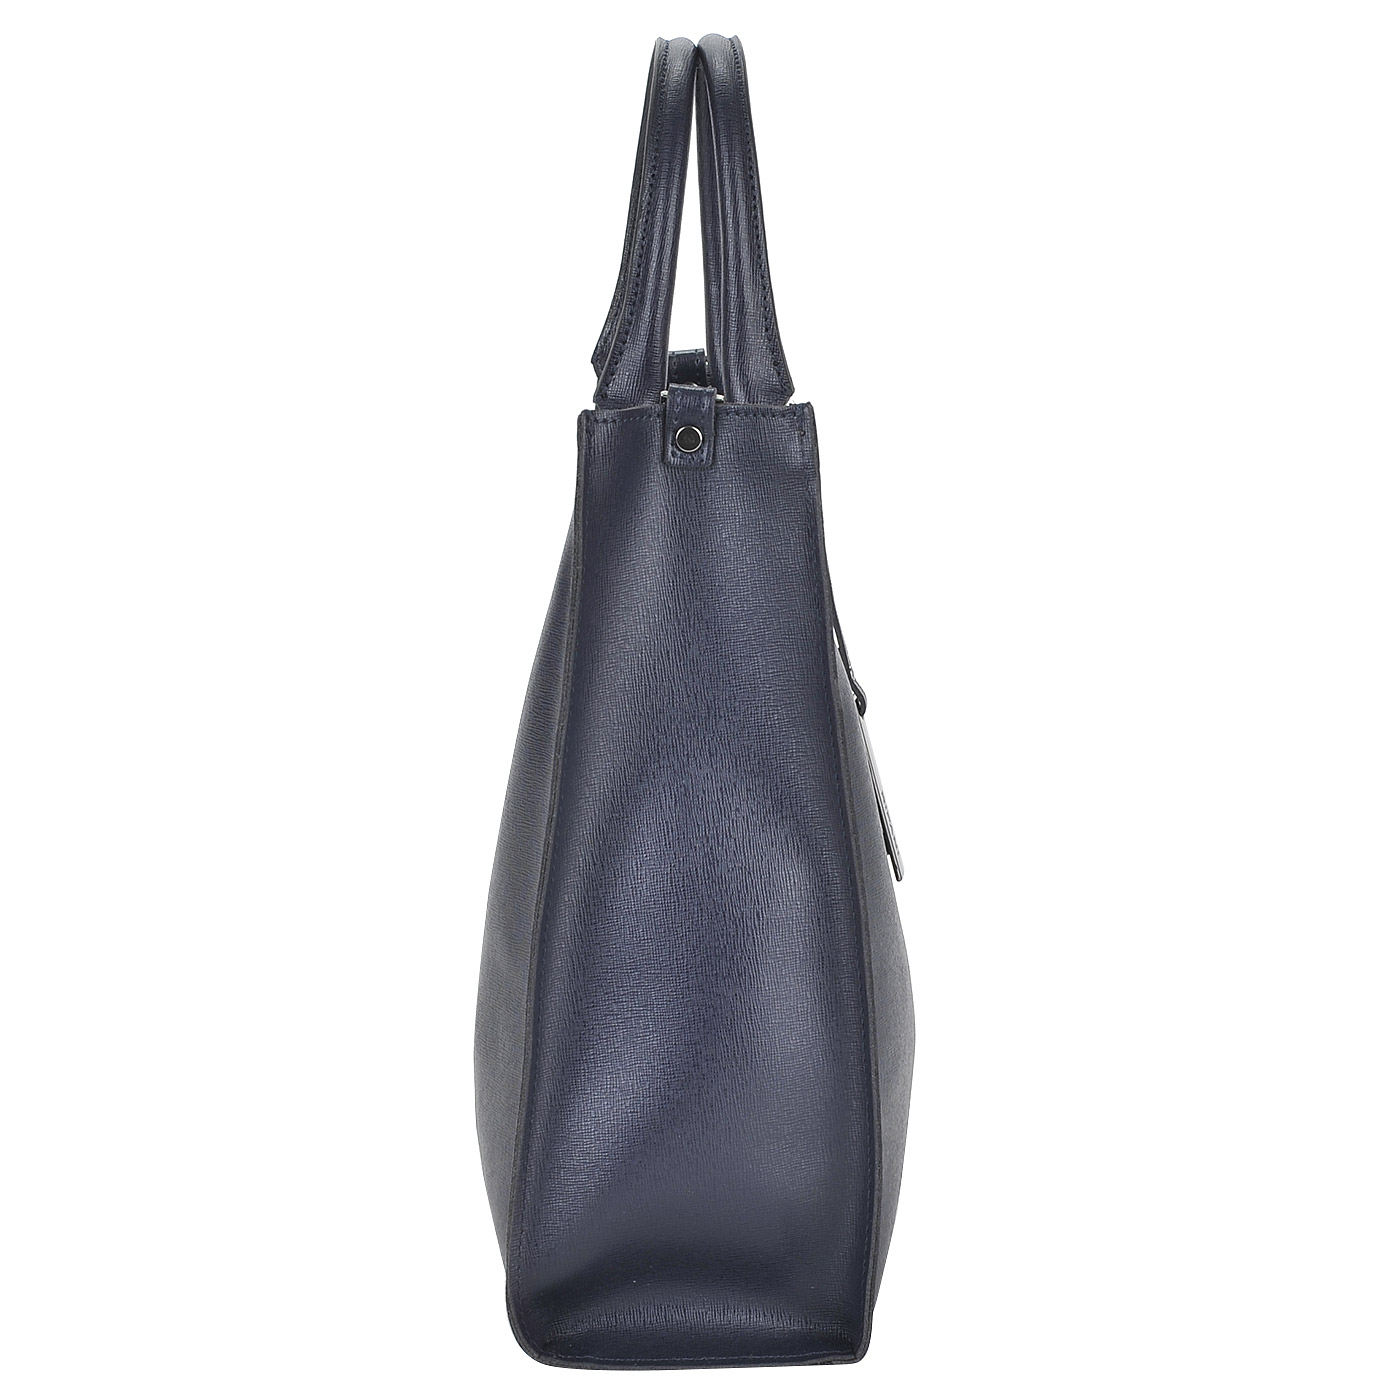 Женская сумка из синей сафьяновой кожи квадратной формы Ripani Cannella